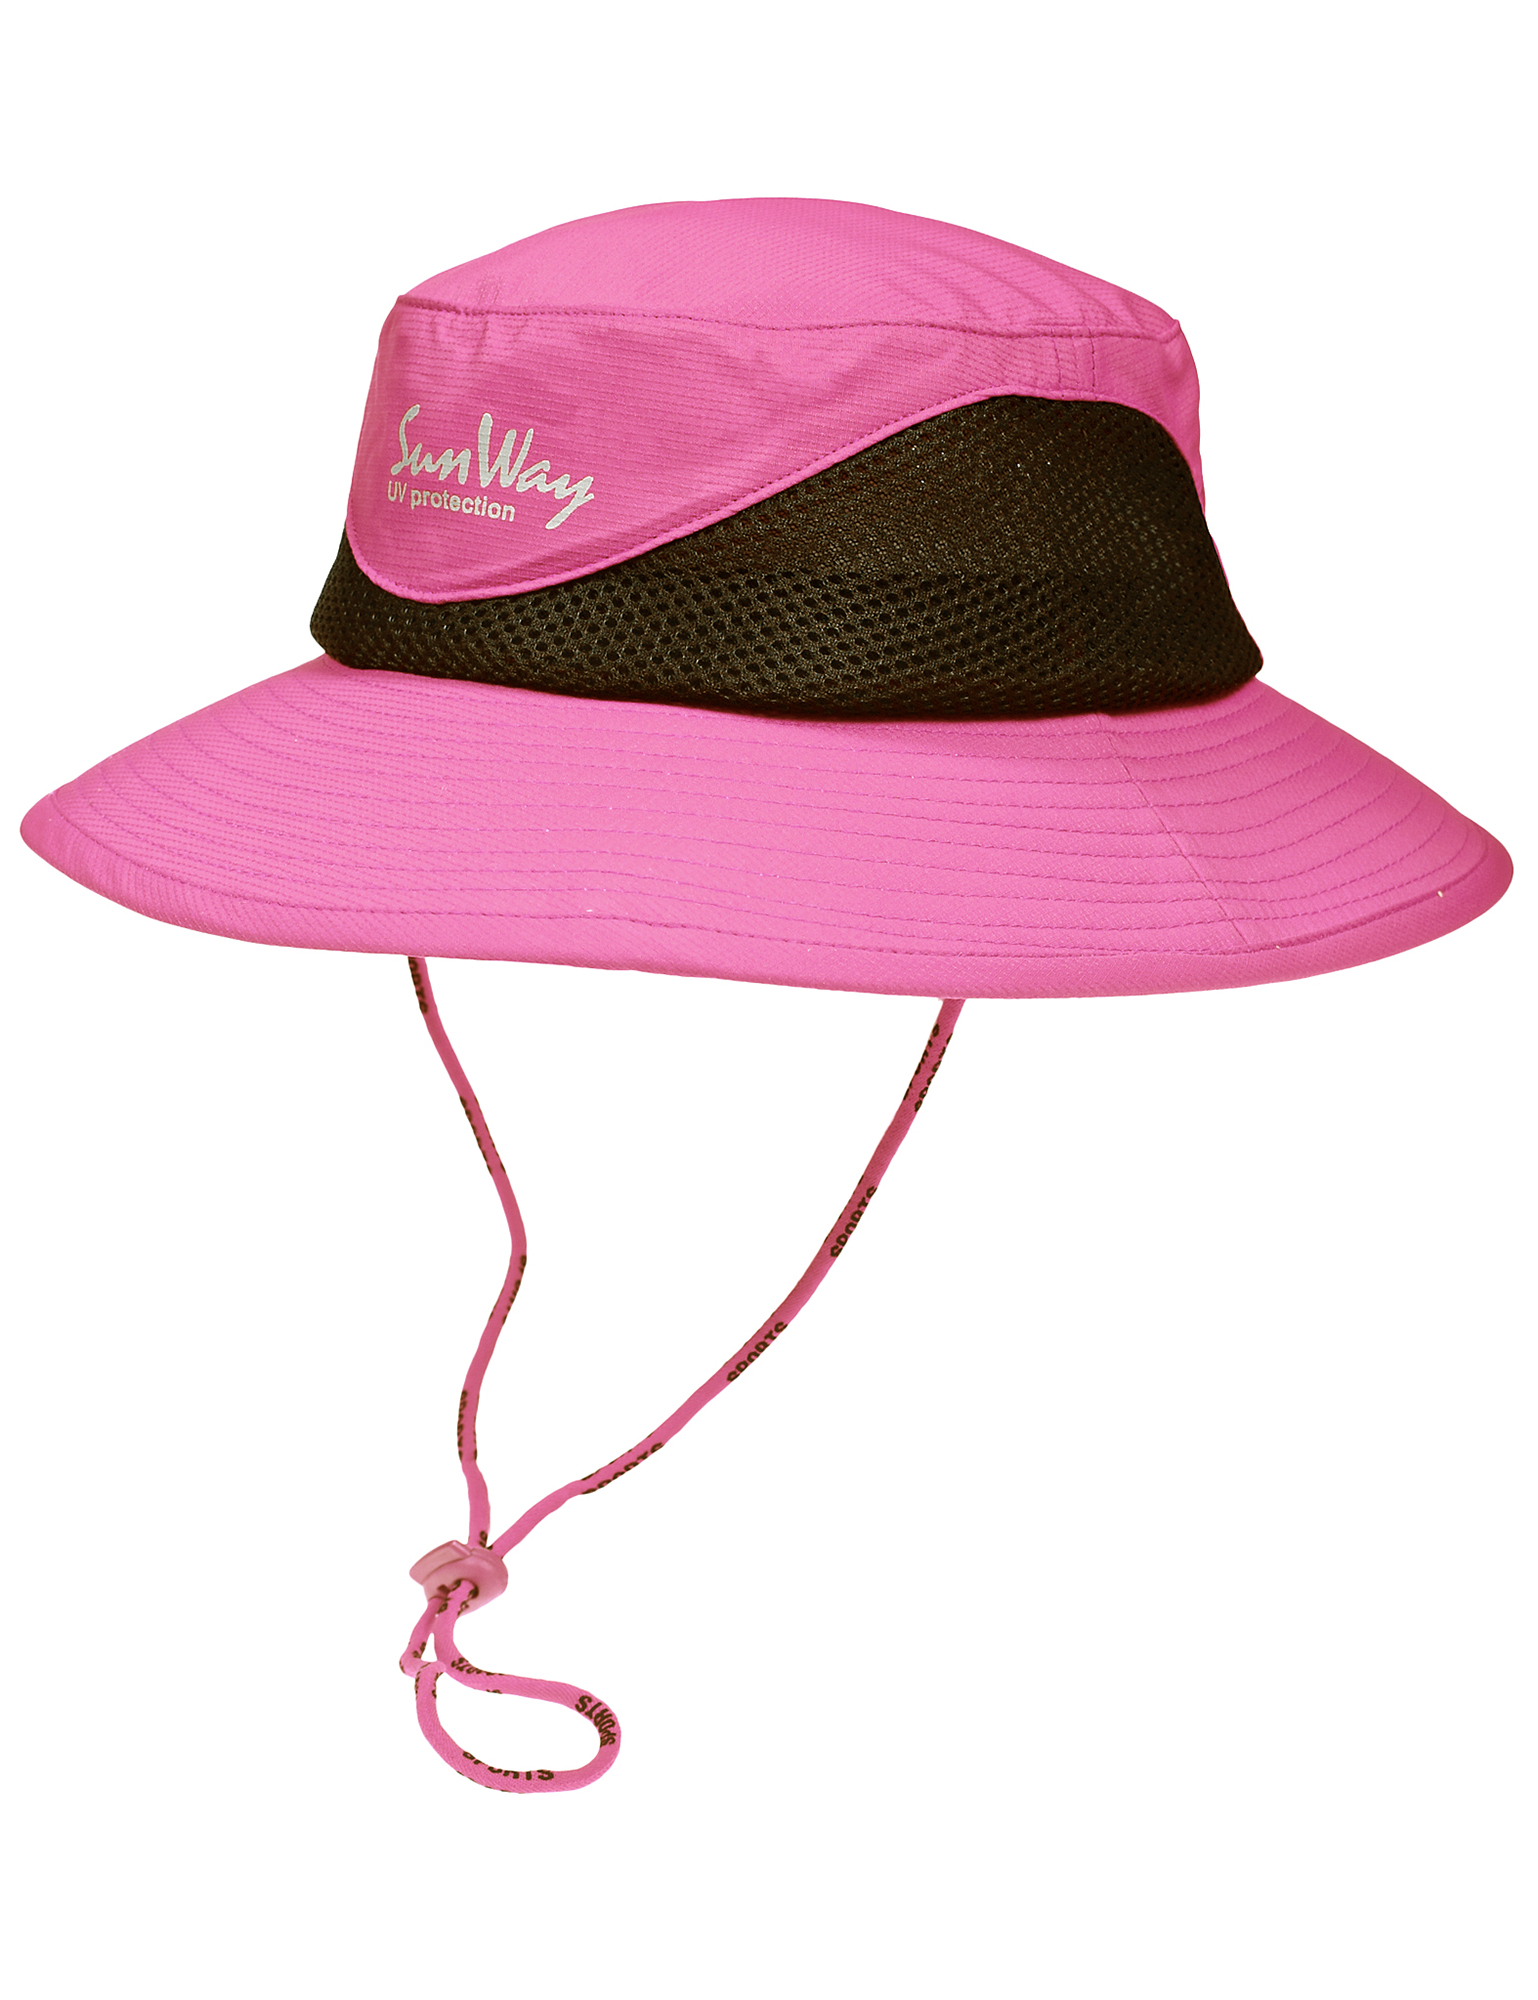 SunWay Pink Safari Hat